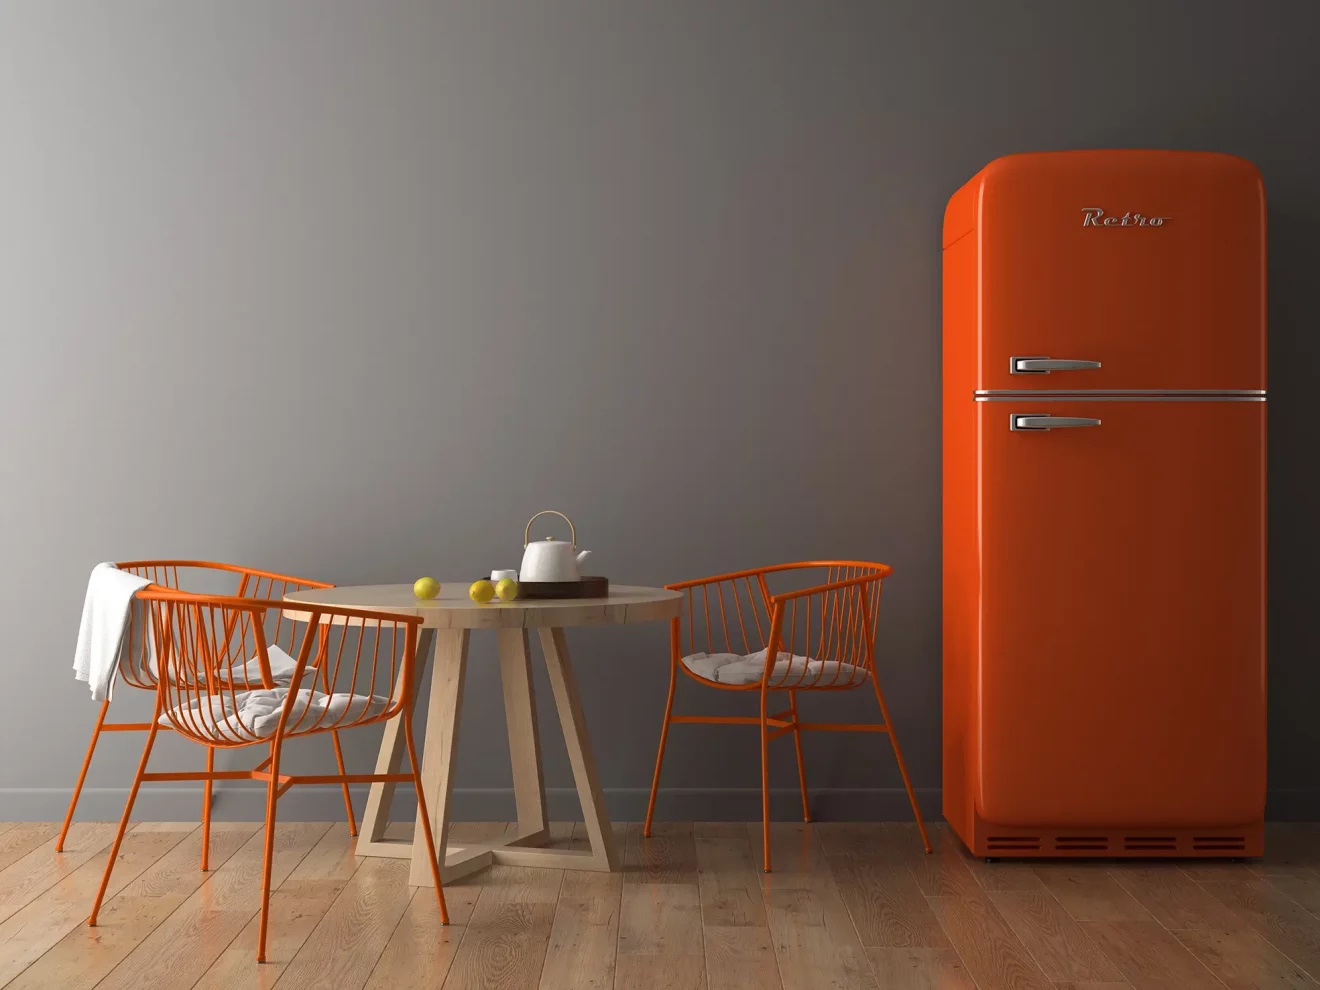 interieur-illustration-3d-refrigerateur-orange